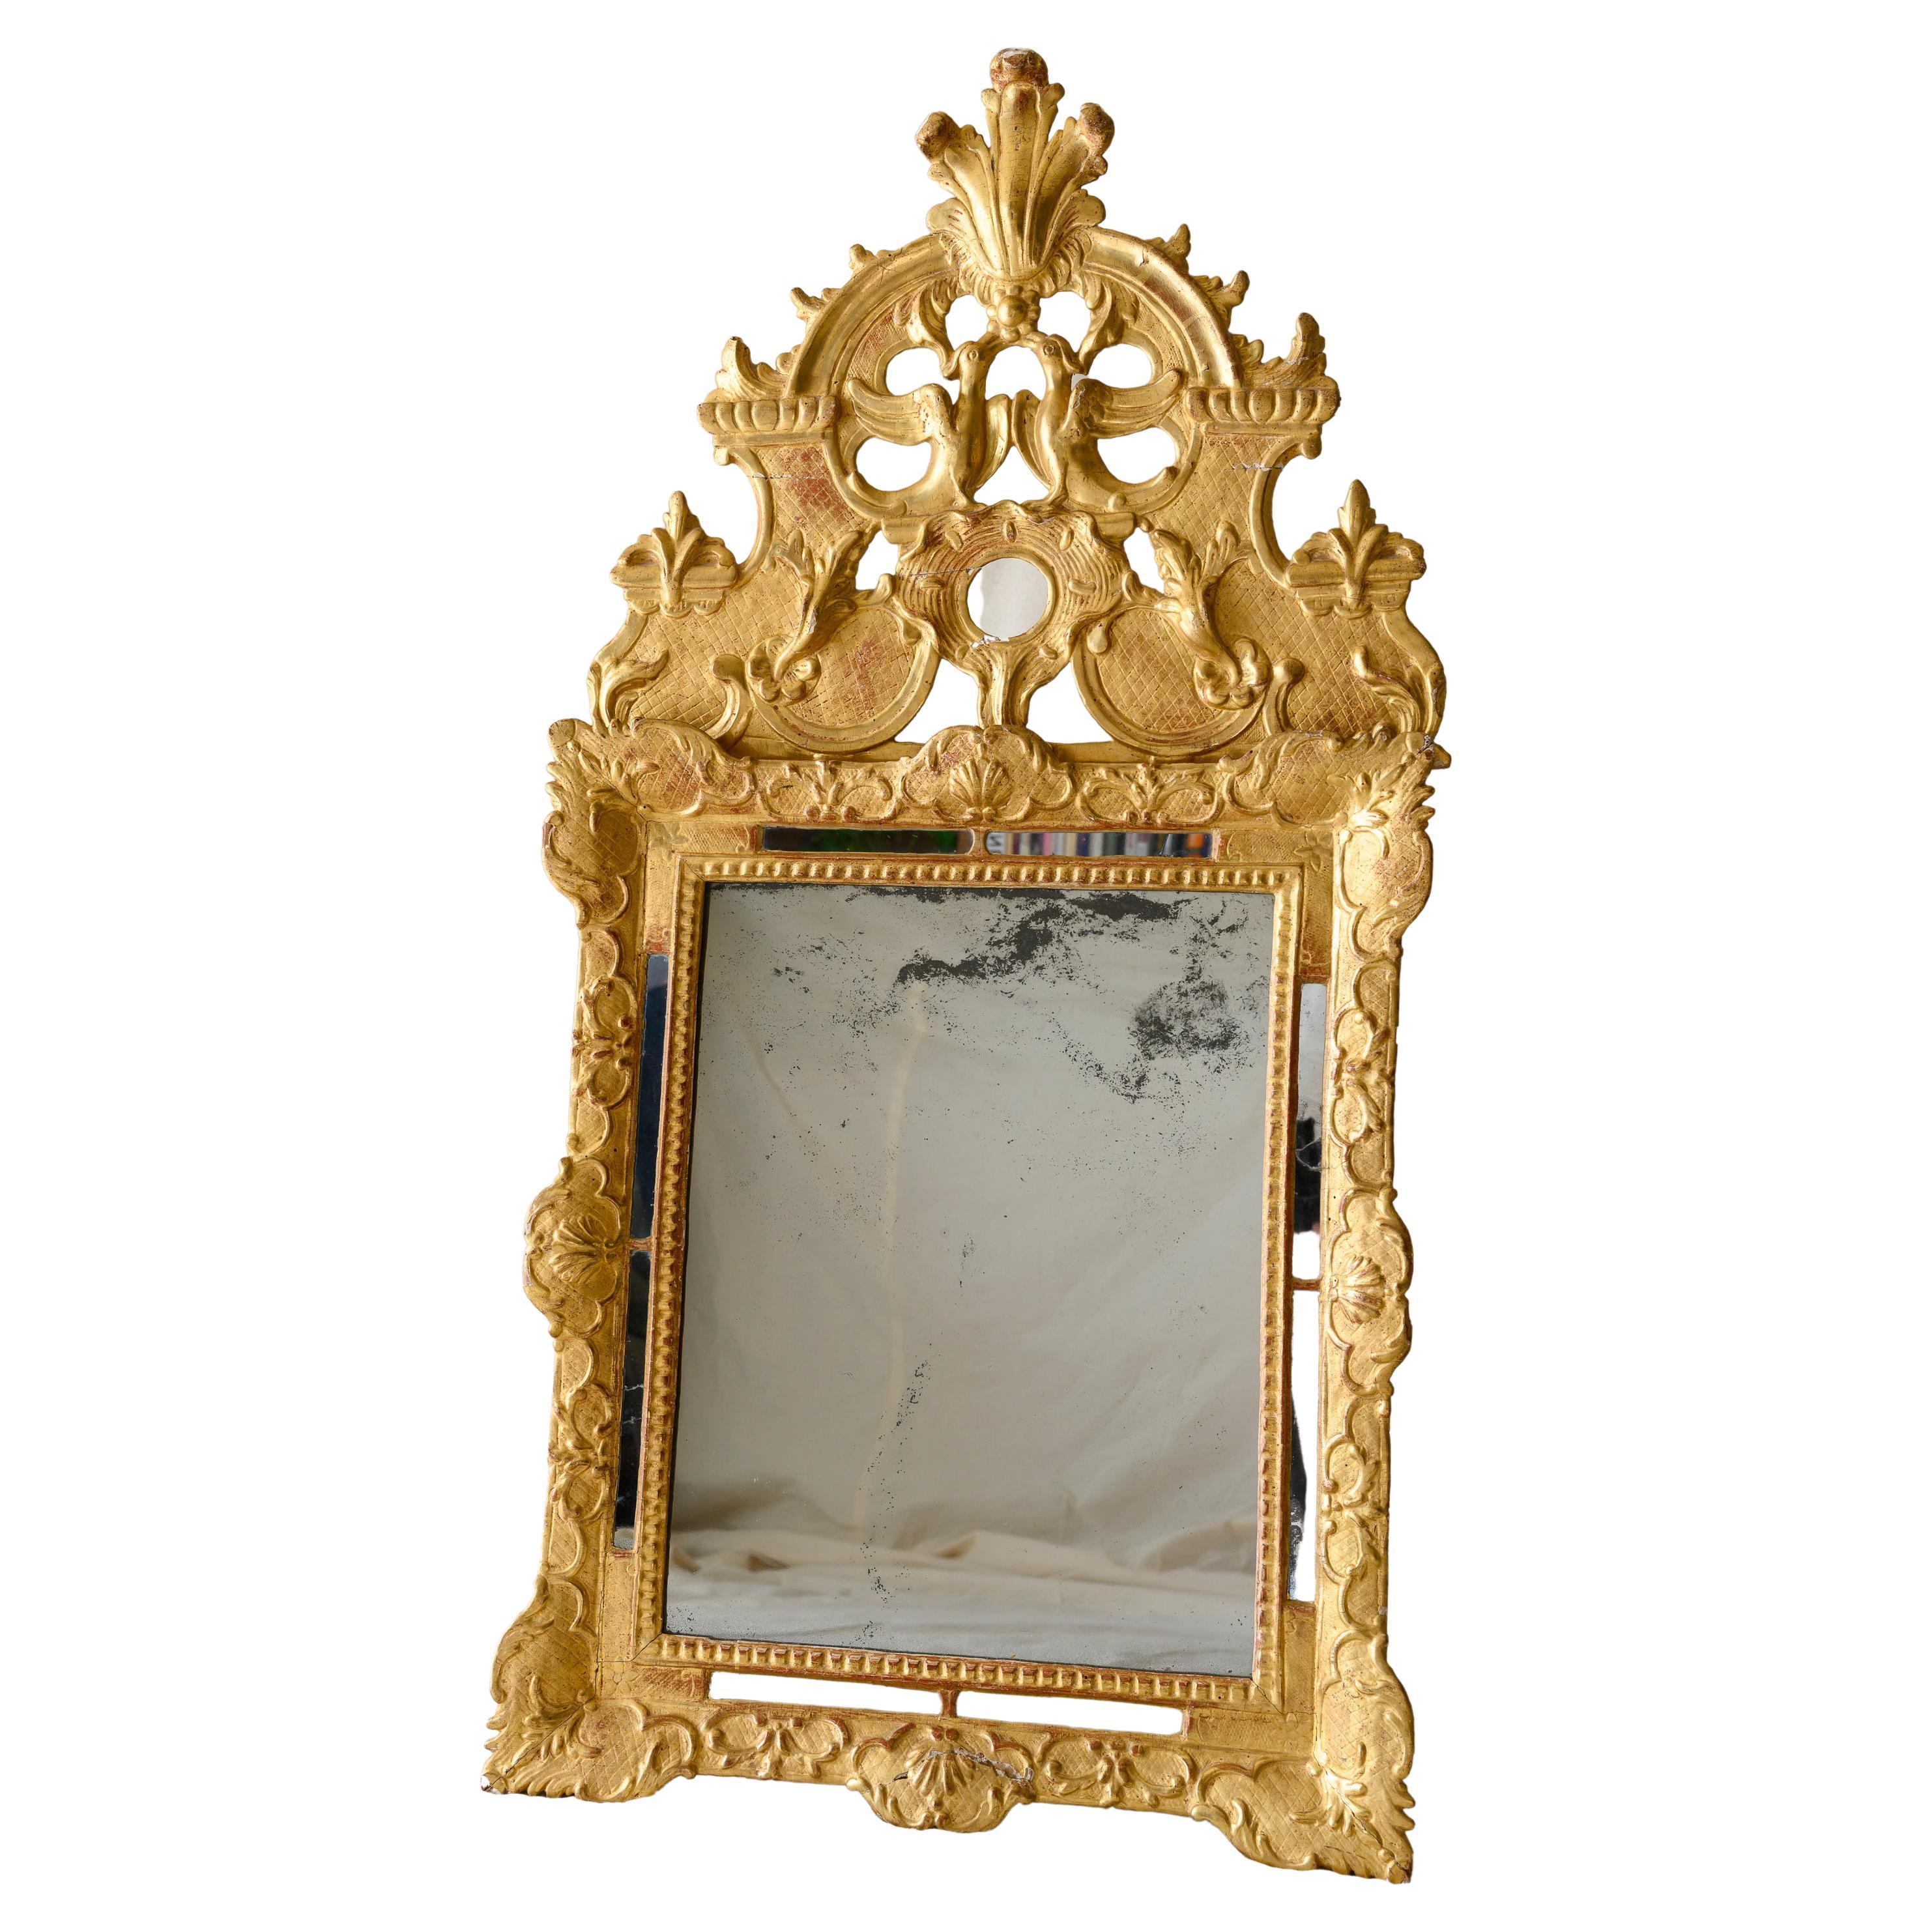 French Regency Period Glitwood Wedding Mirror